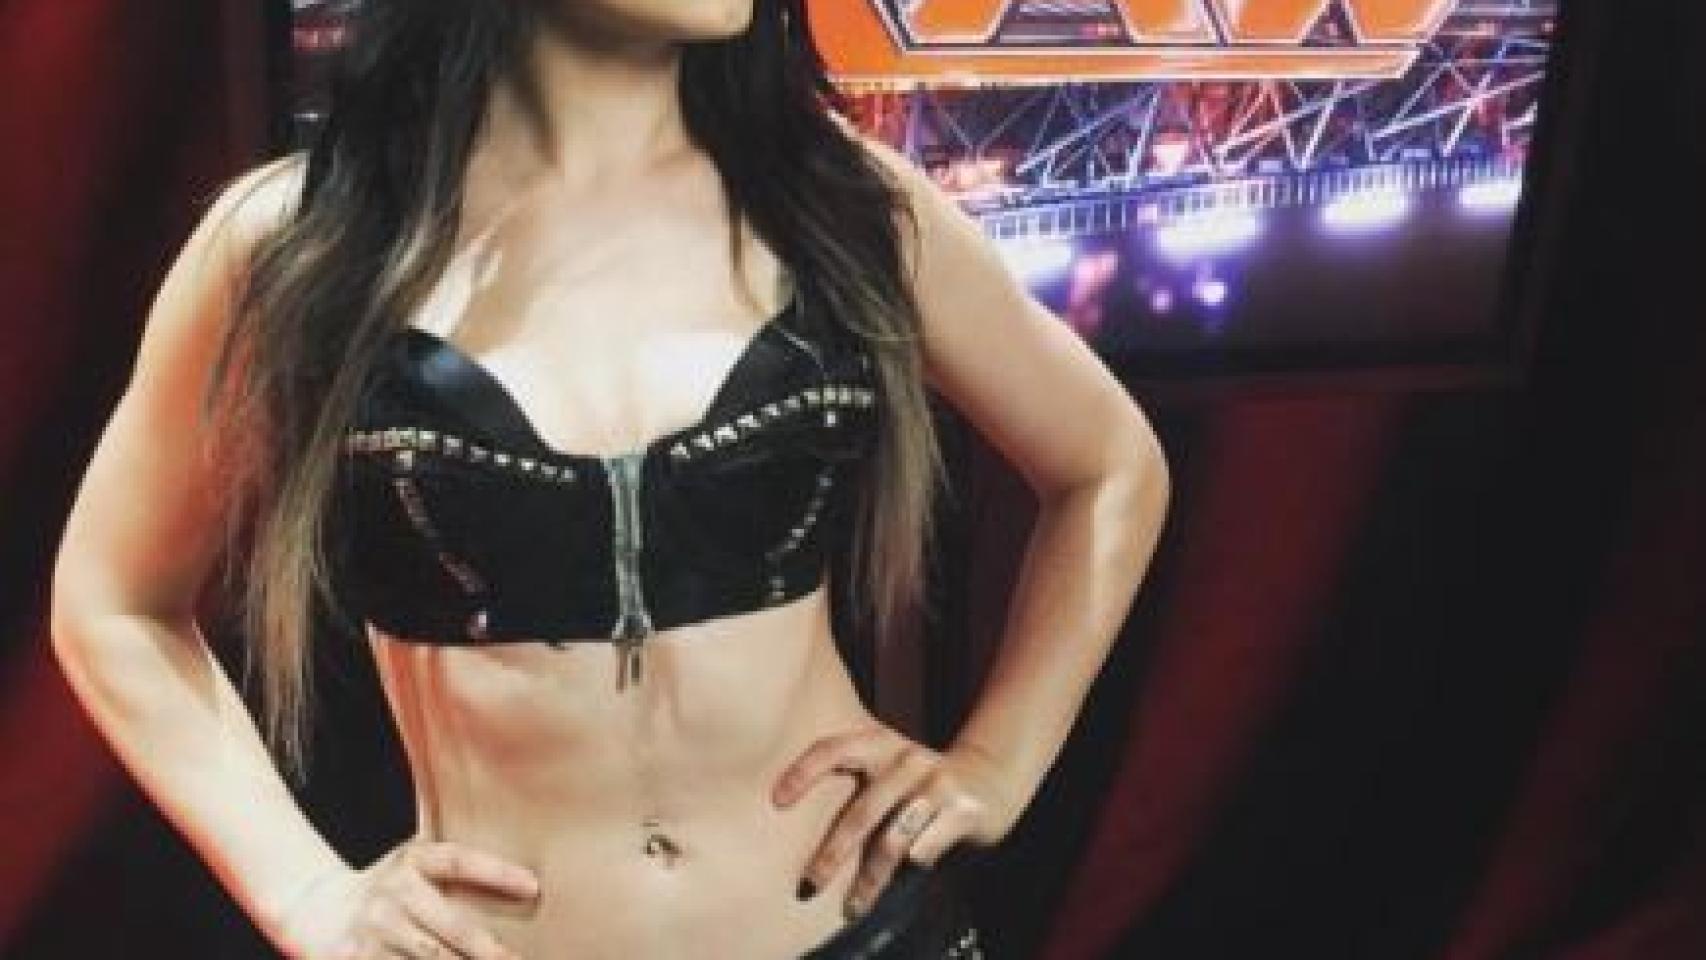 La angustia de la campeona de Wrestling tras filtrarse sus vídeos de contenido sexual imagen Foto